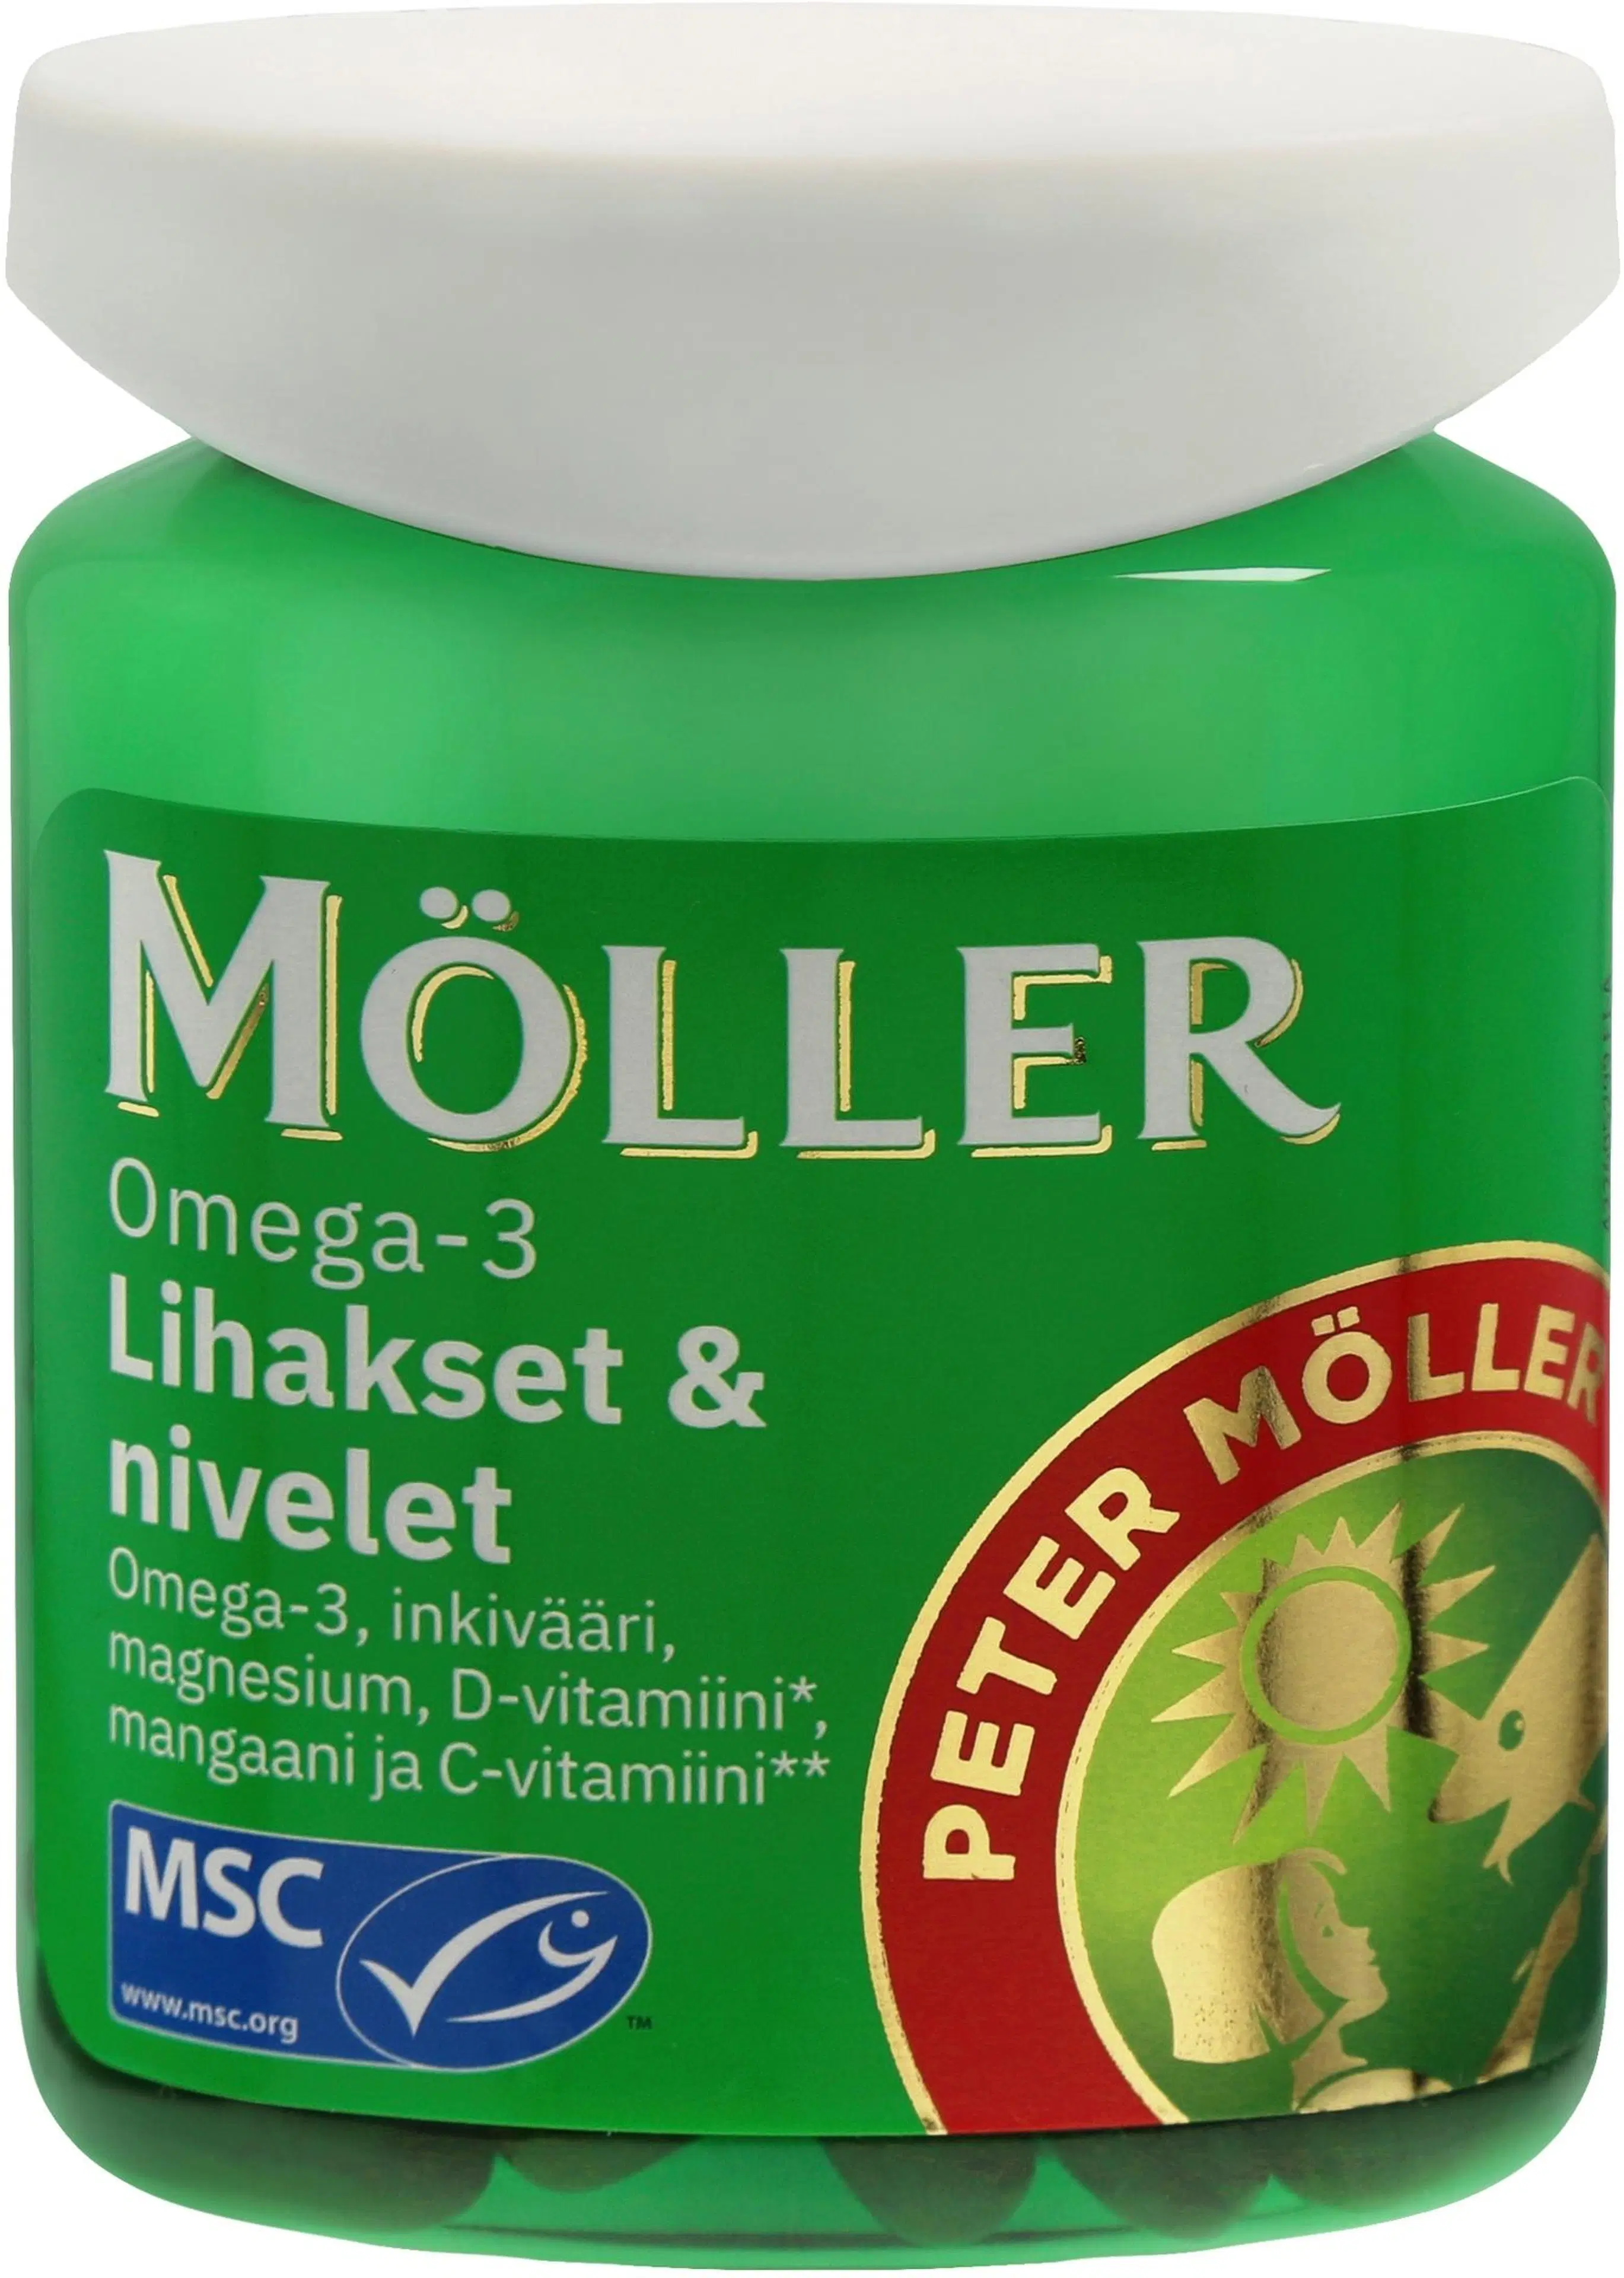 Möller Omega-3 Lihakset & nivelet Omega-3-rasvahappo-inkivääri-vitamiini-kivennäisainekapseli ravintolisä 81g/60kaps